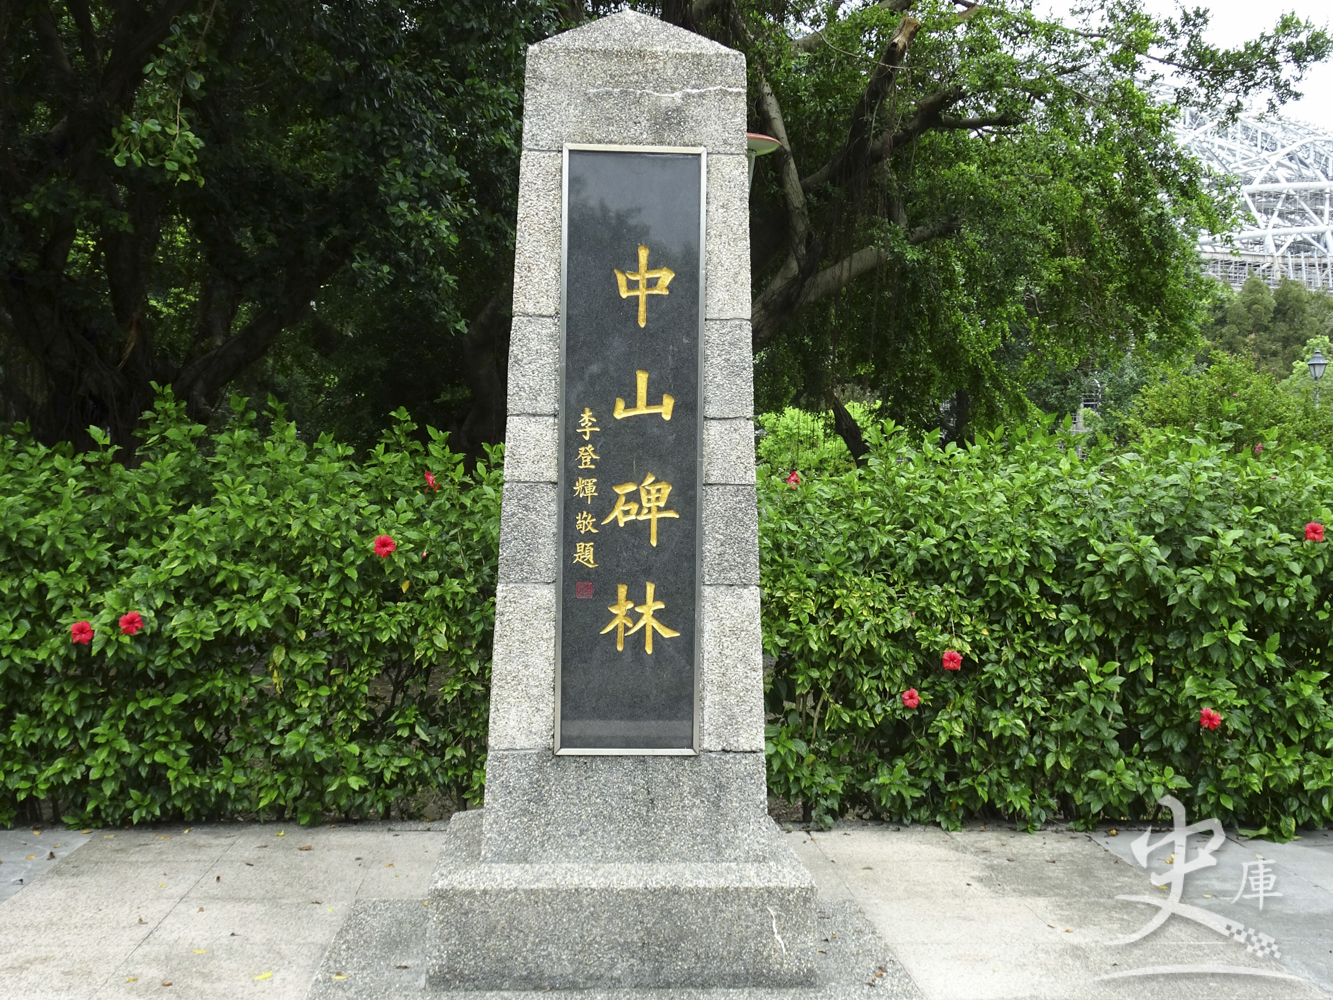 Chung Shan Park (Taipei, Taiwan)